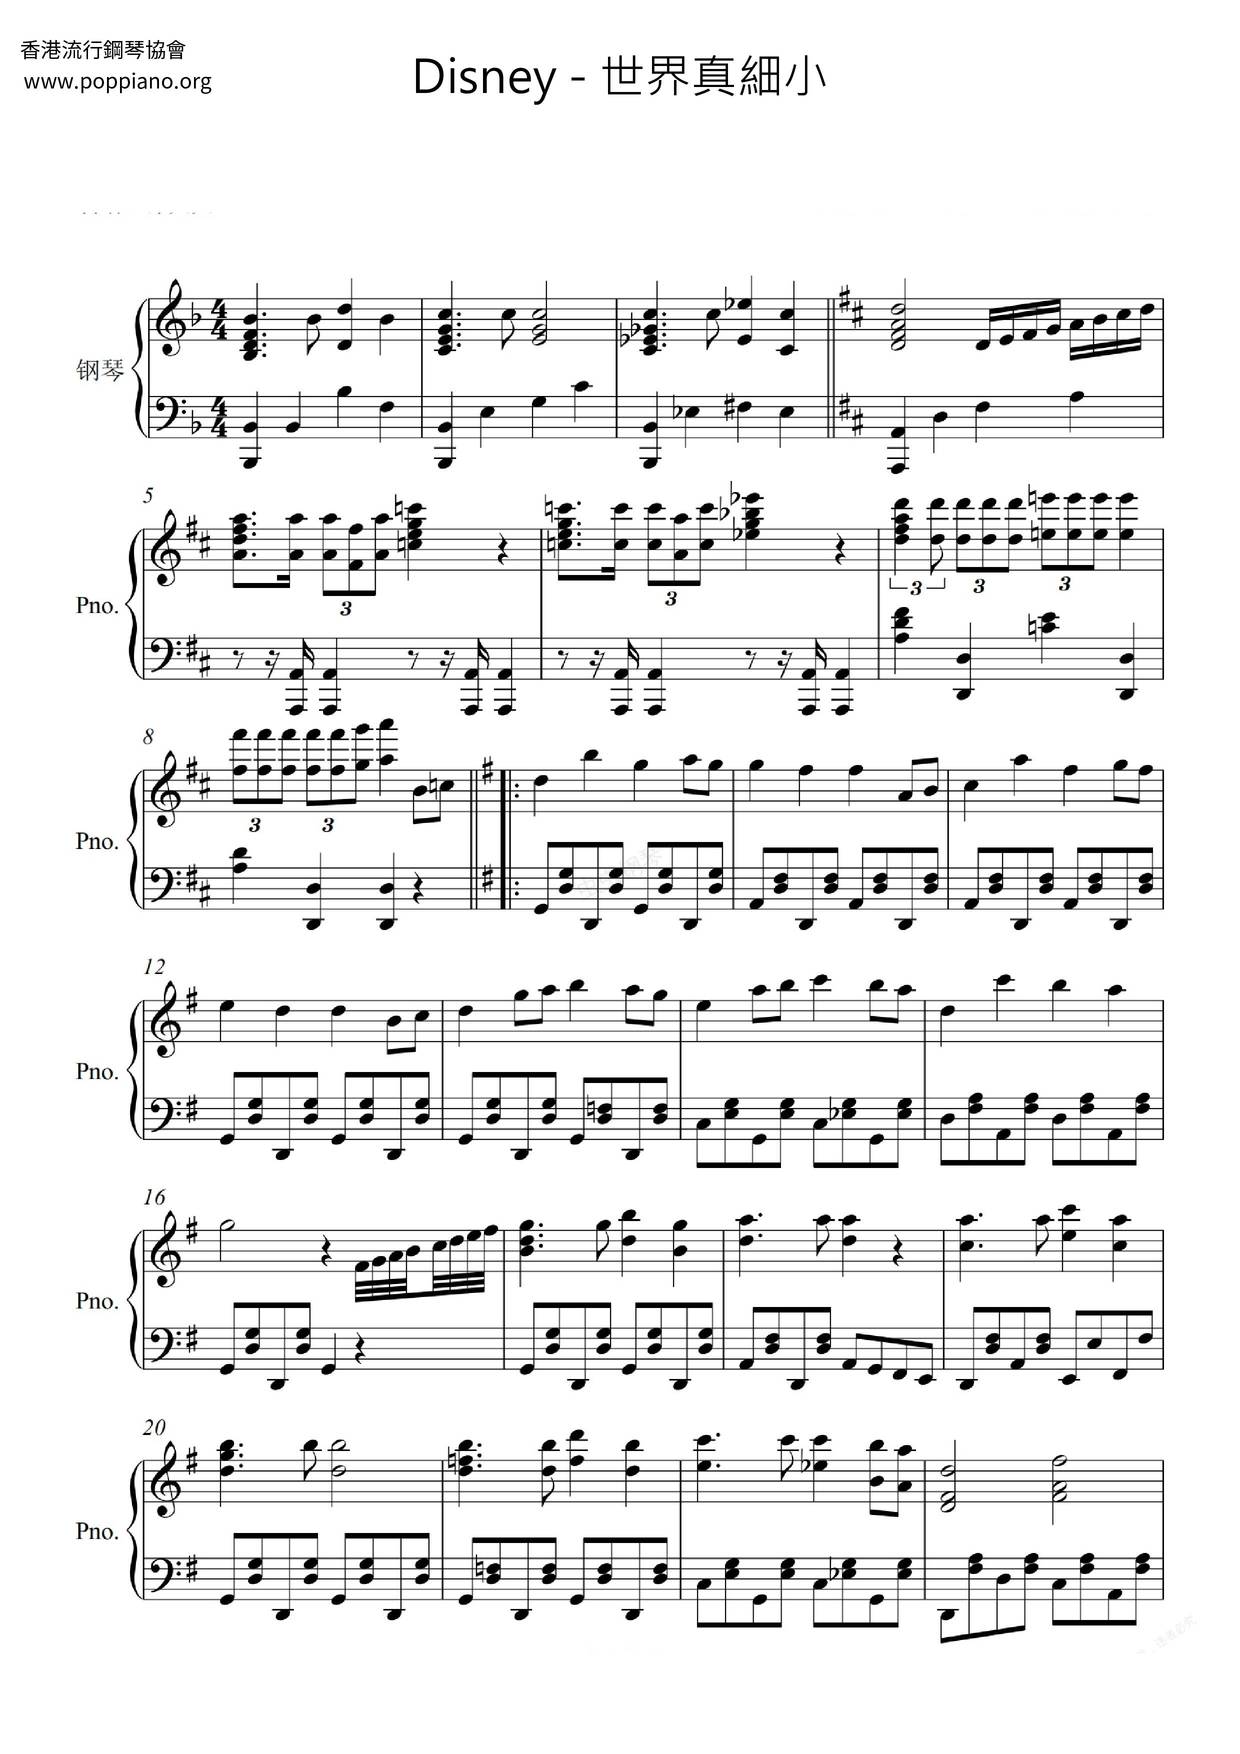 ディズニー 小さな世界 楽谱 ピアノ譜pdf 香港ポップピアノ協会 無料pdf楽譜ダウンロード Gakufu